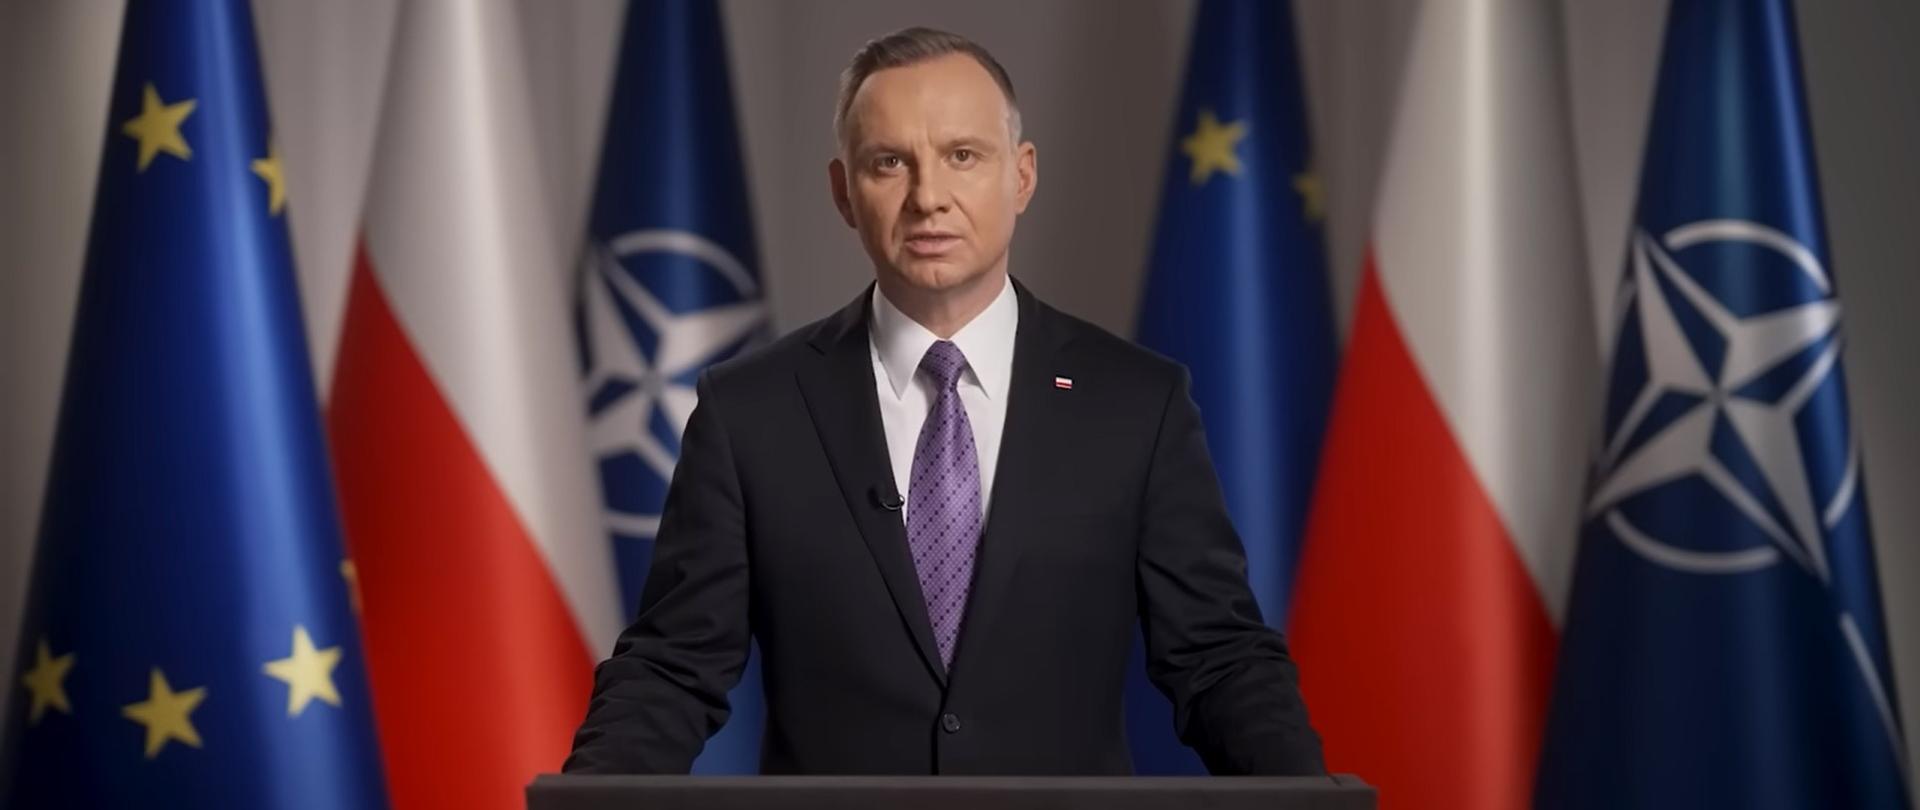 Ucrânia: Presidente da Polónia frisa que o país tem “interesses” próprios